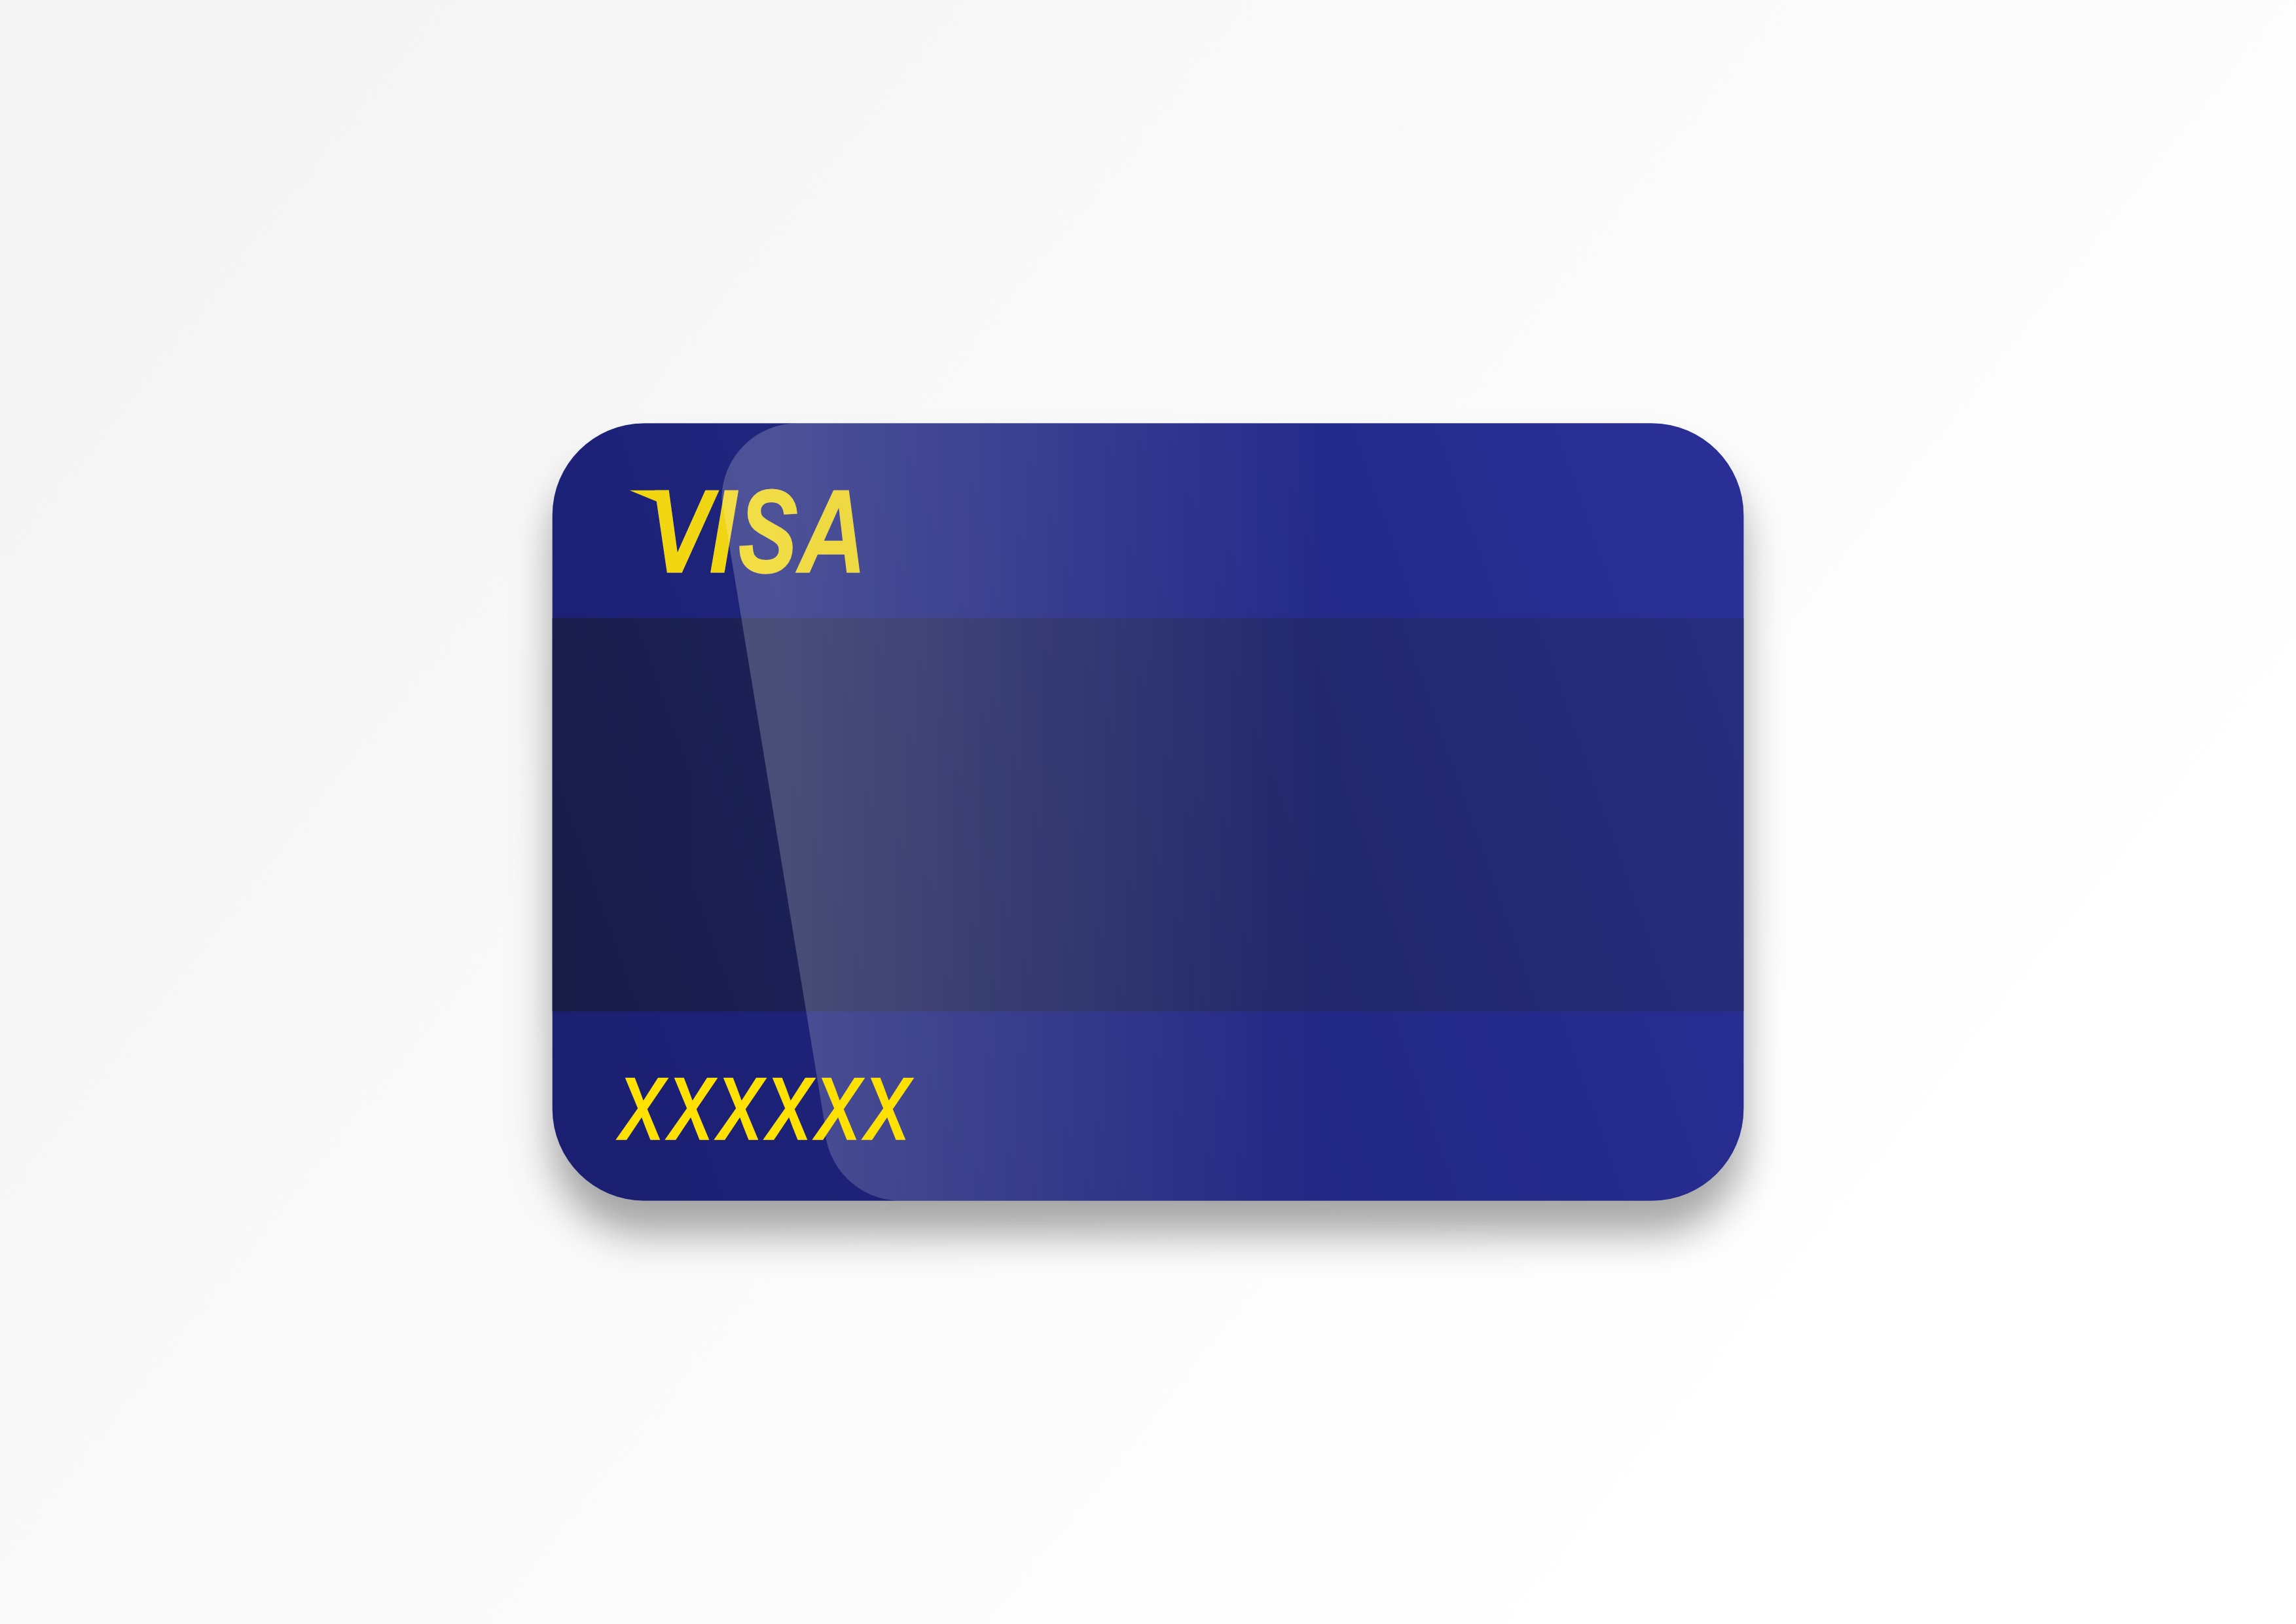 Карточки visa. Карта виза. Карточка visa. Кредитная карта макет. Пустая банковская карта.